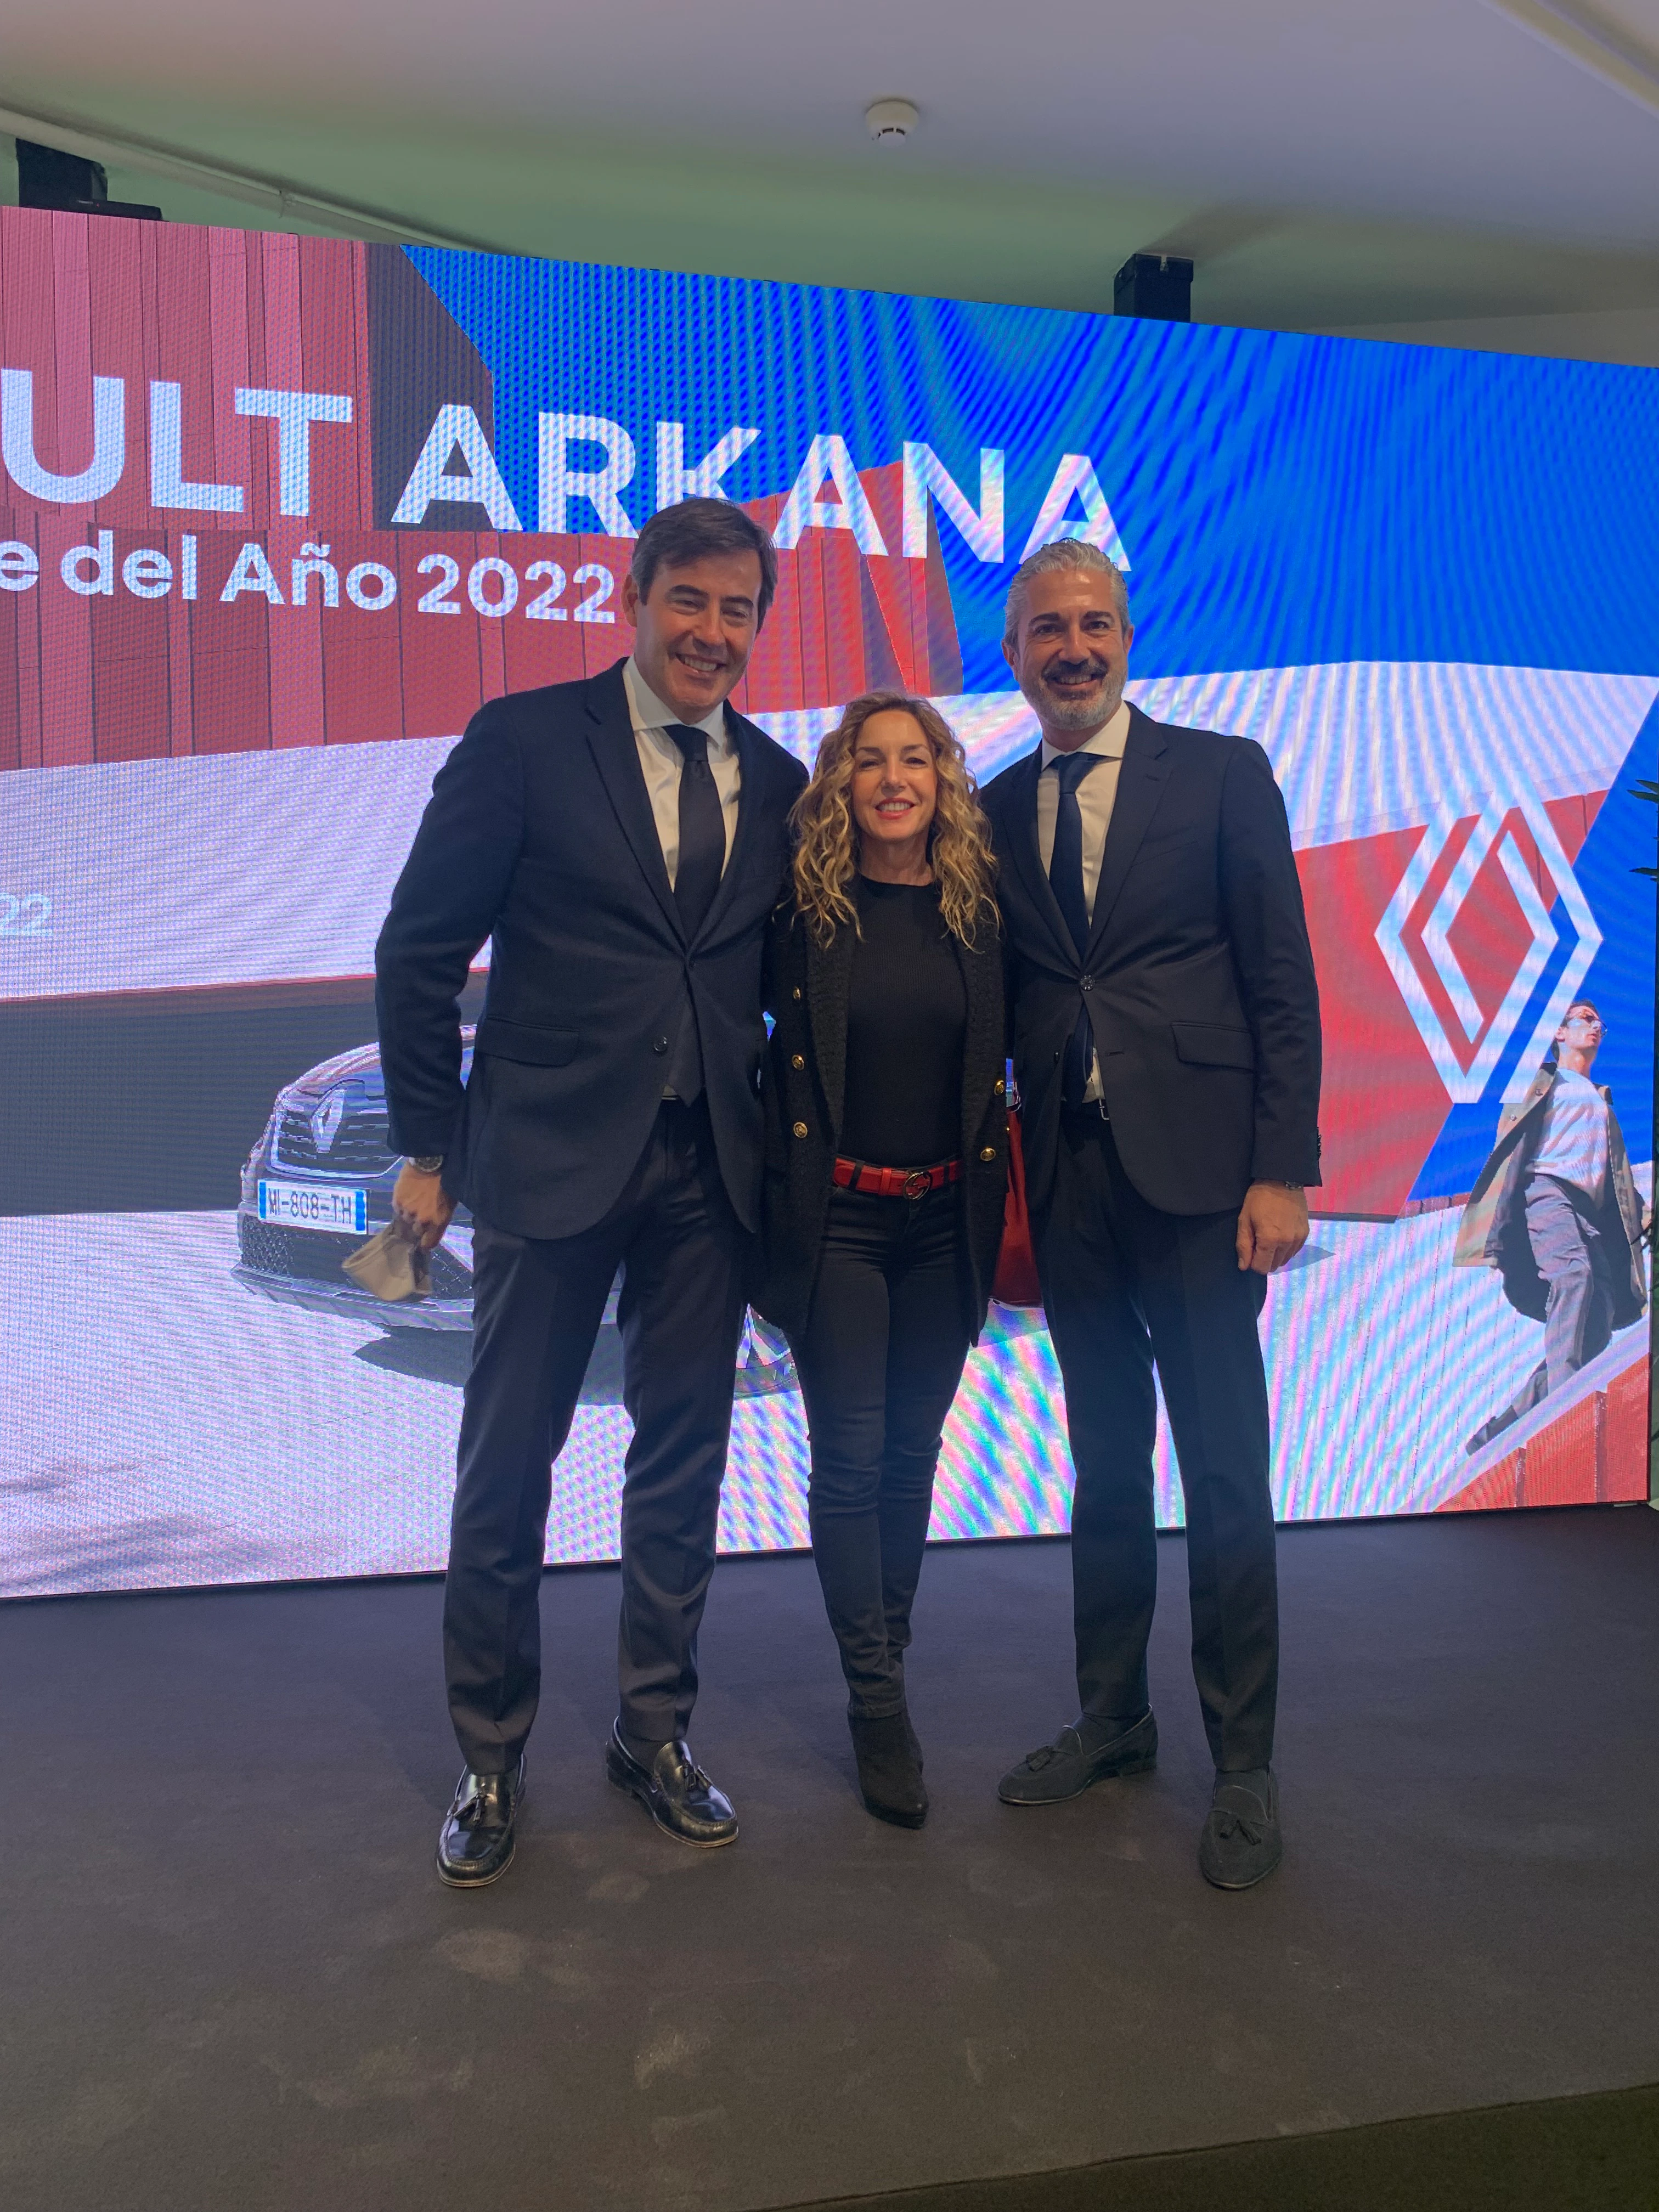 José Miguel Aparicio, Eva Vicente e Ignacio González, representantes del Grupo Volkswagen